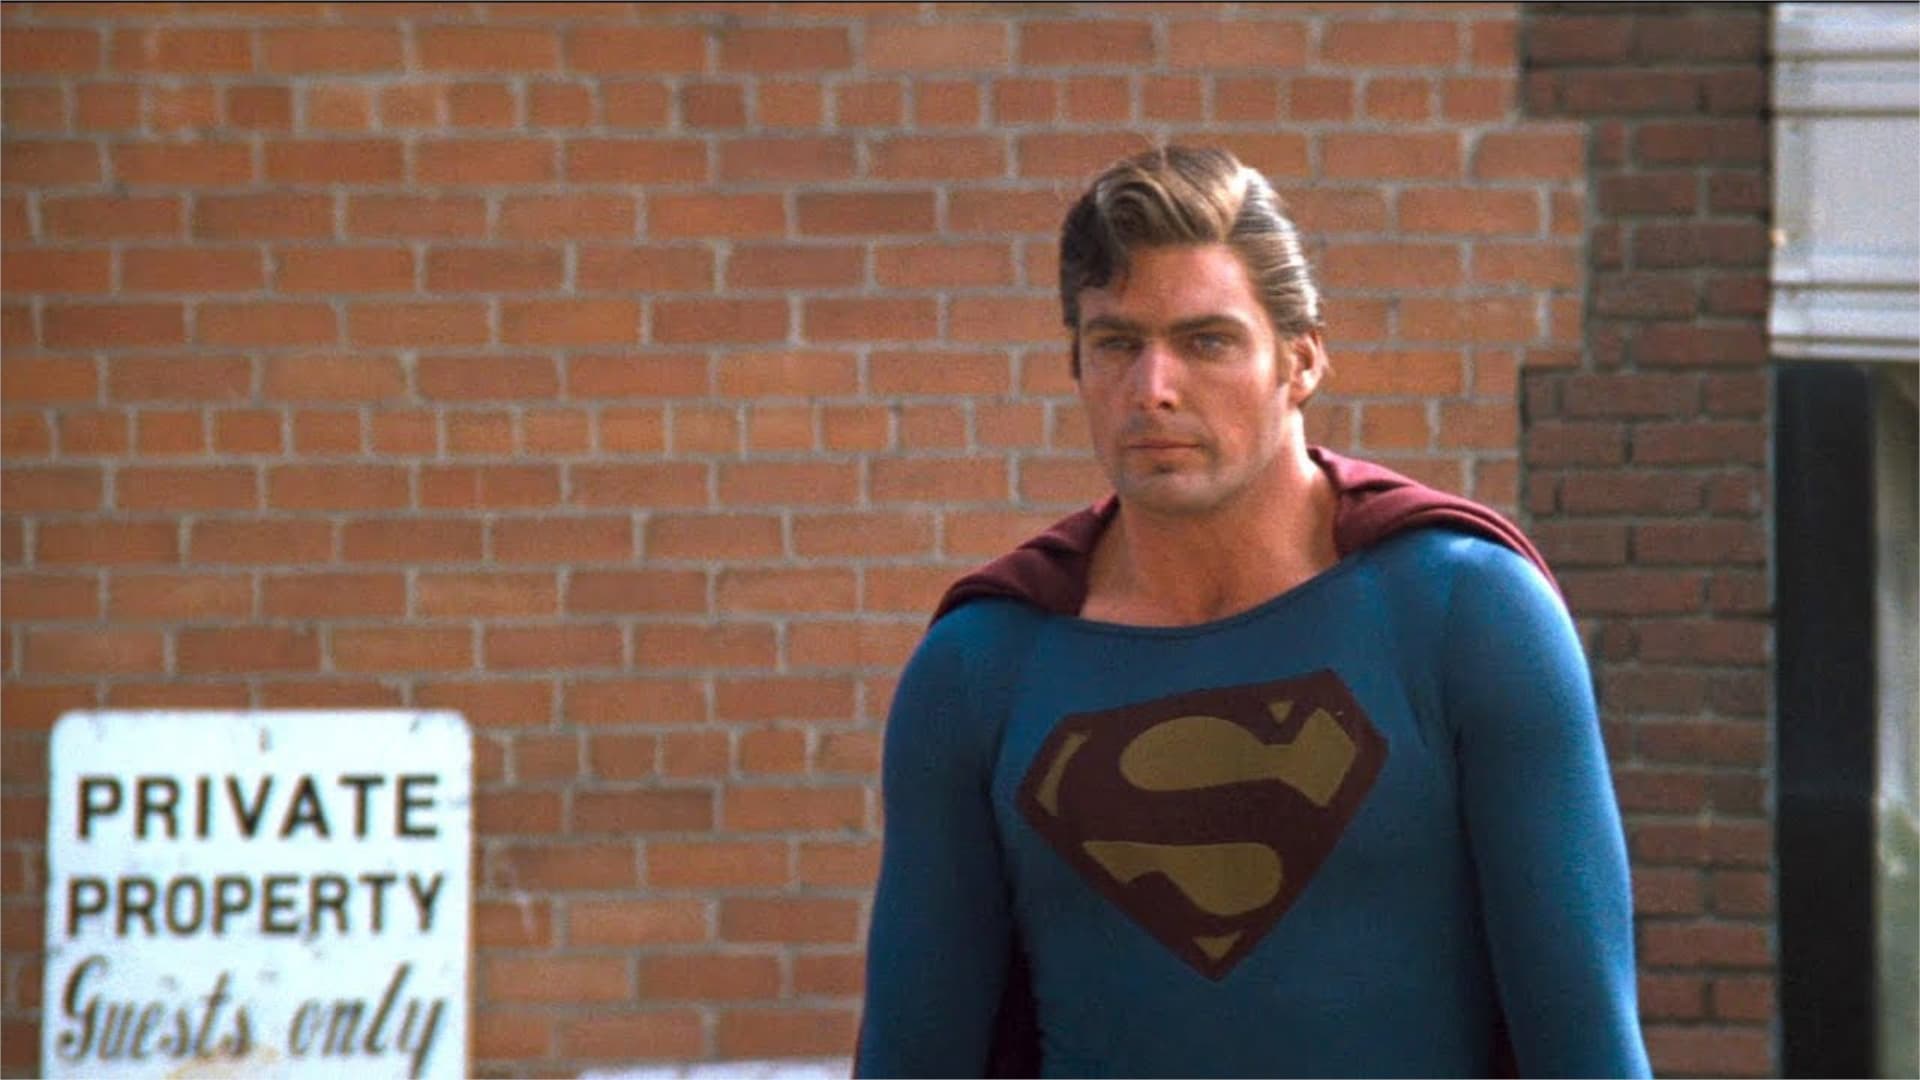 Superman III (1983)